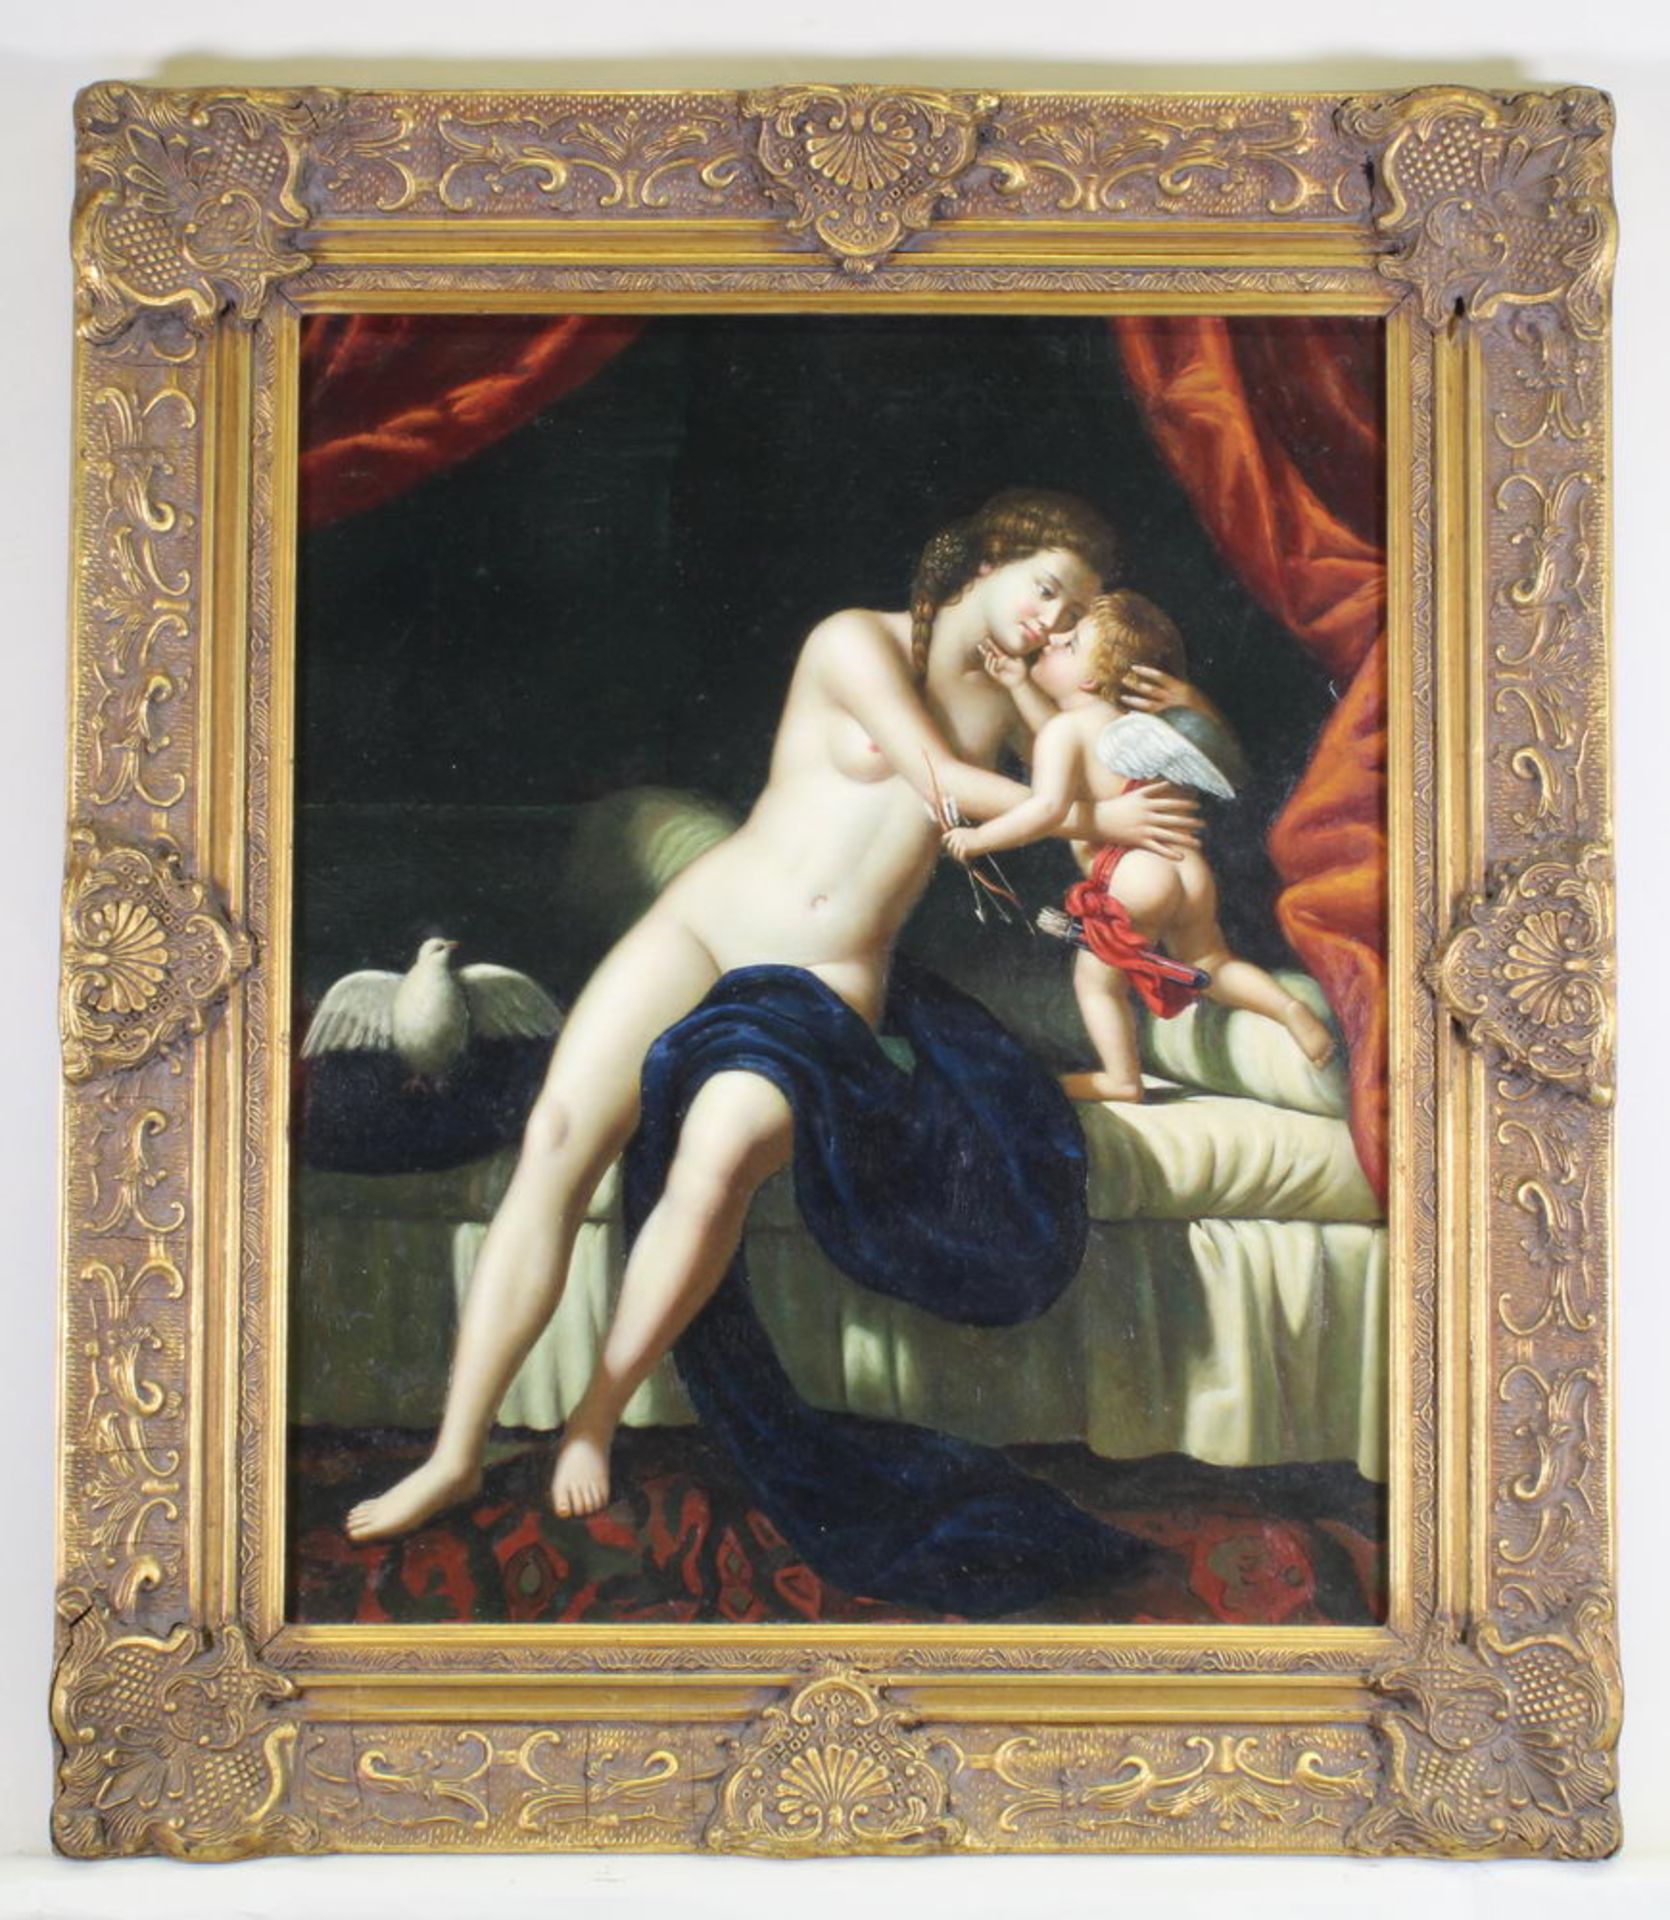 Unbekannter Maler (20. Jh.), "Venus und Amor", Öl auf Leinwand, im alten Stil, 60 x 50 cm - Image 2 of 4